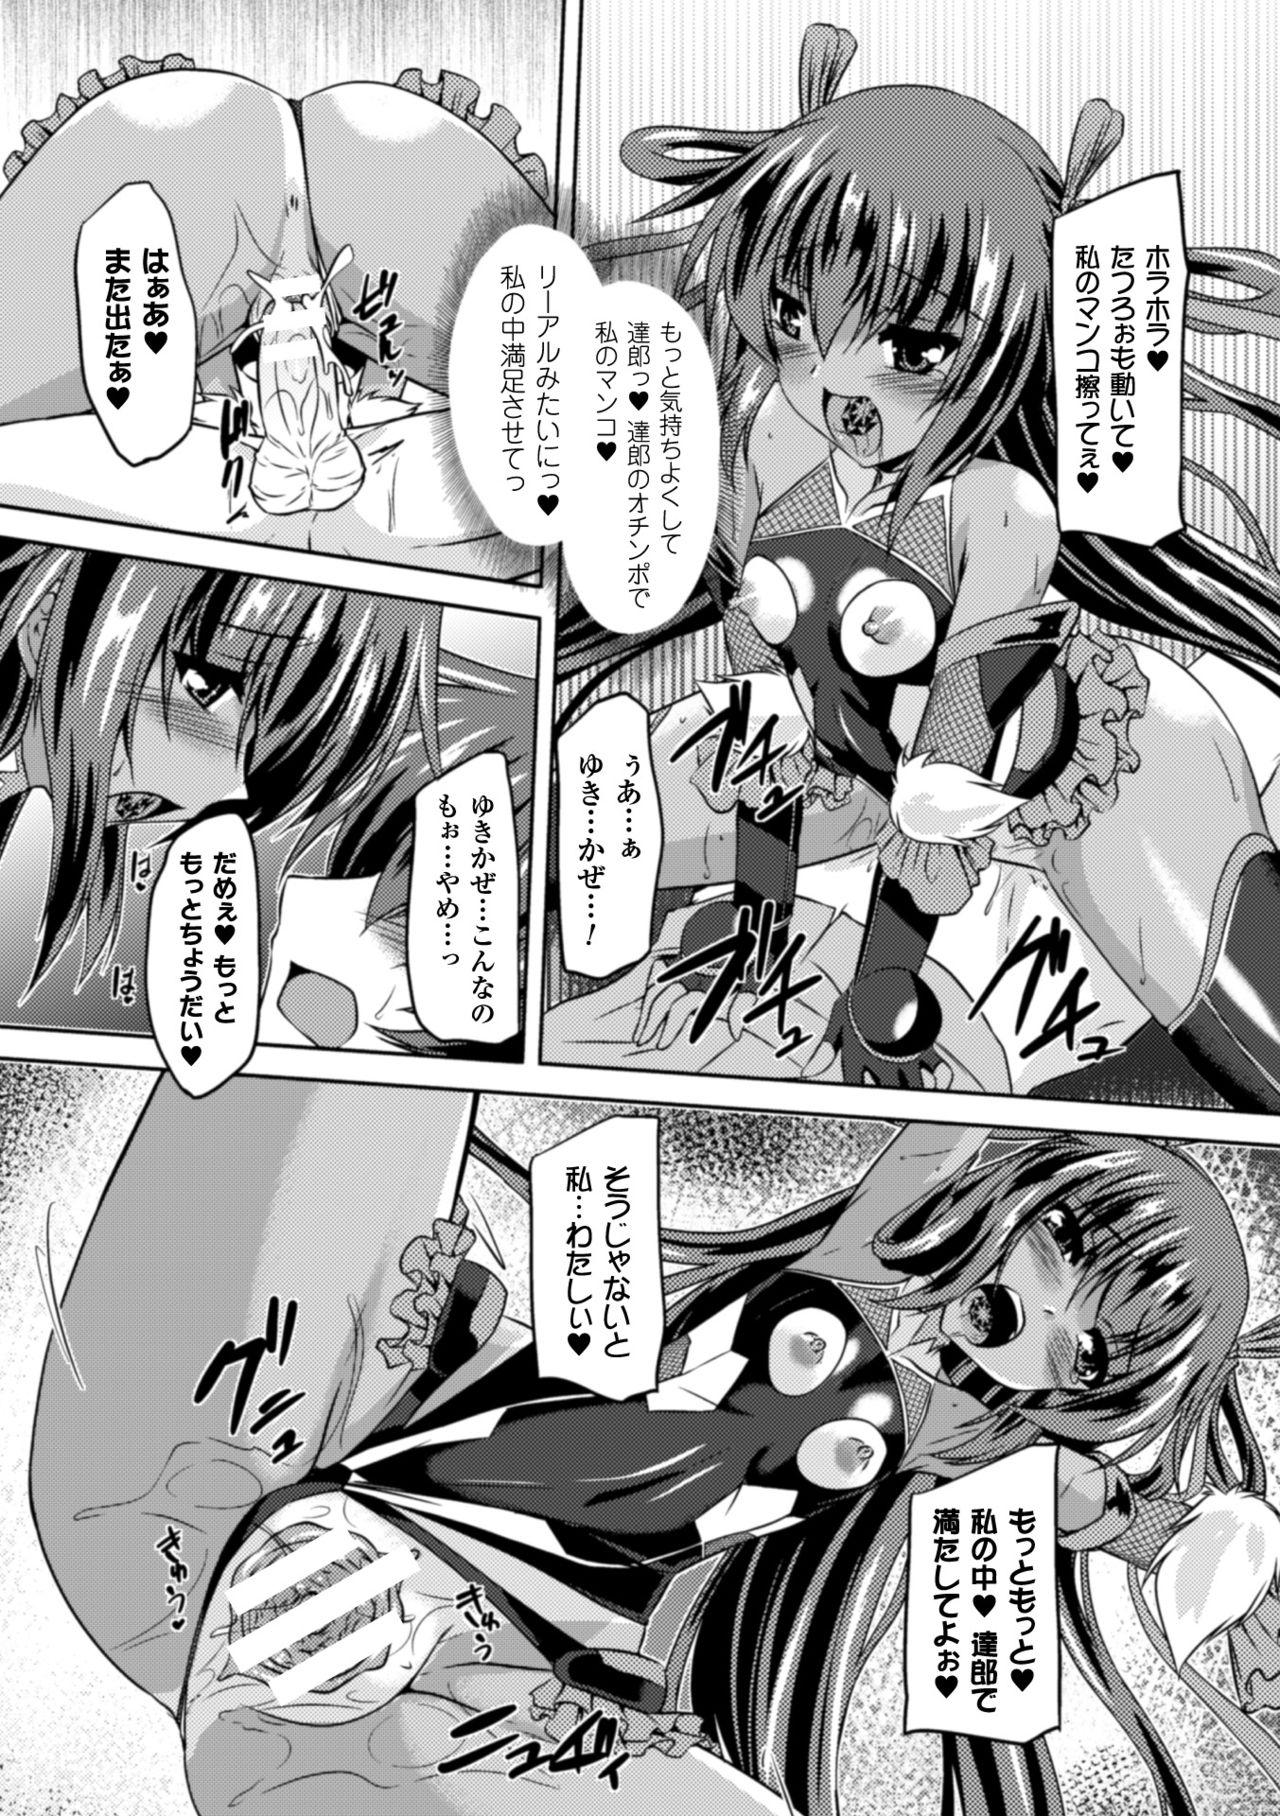 Seigi no Heroine Kangoku File Vol. 2 11